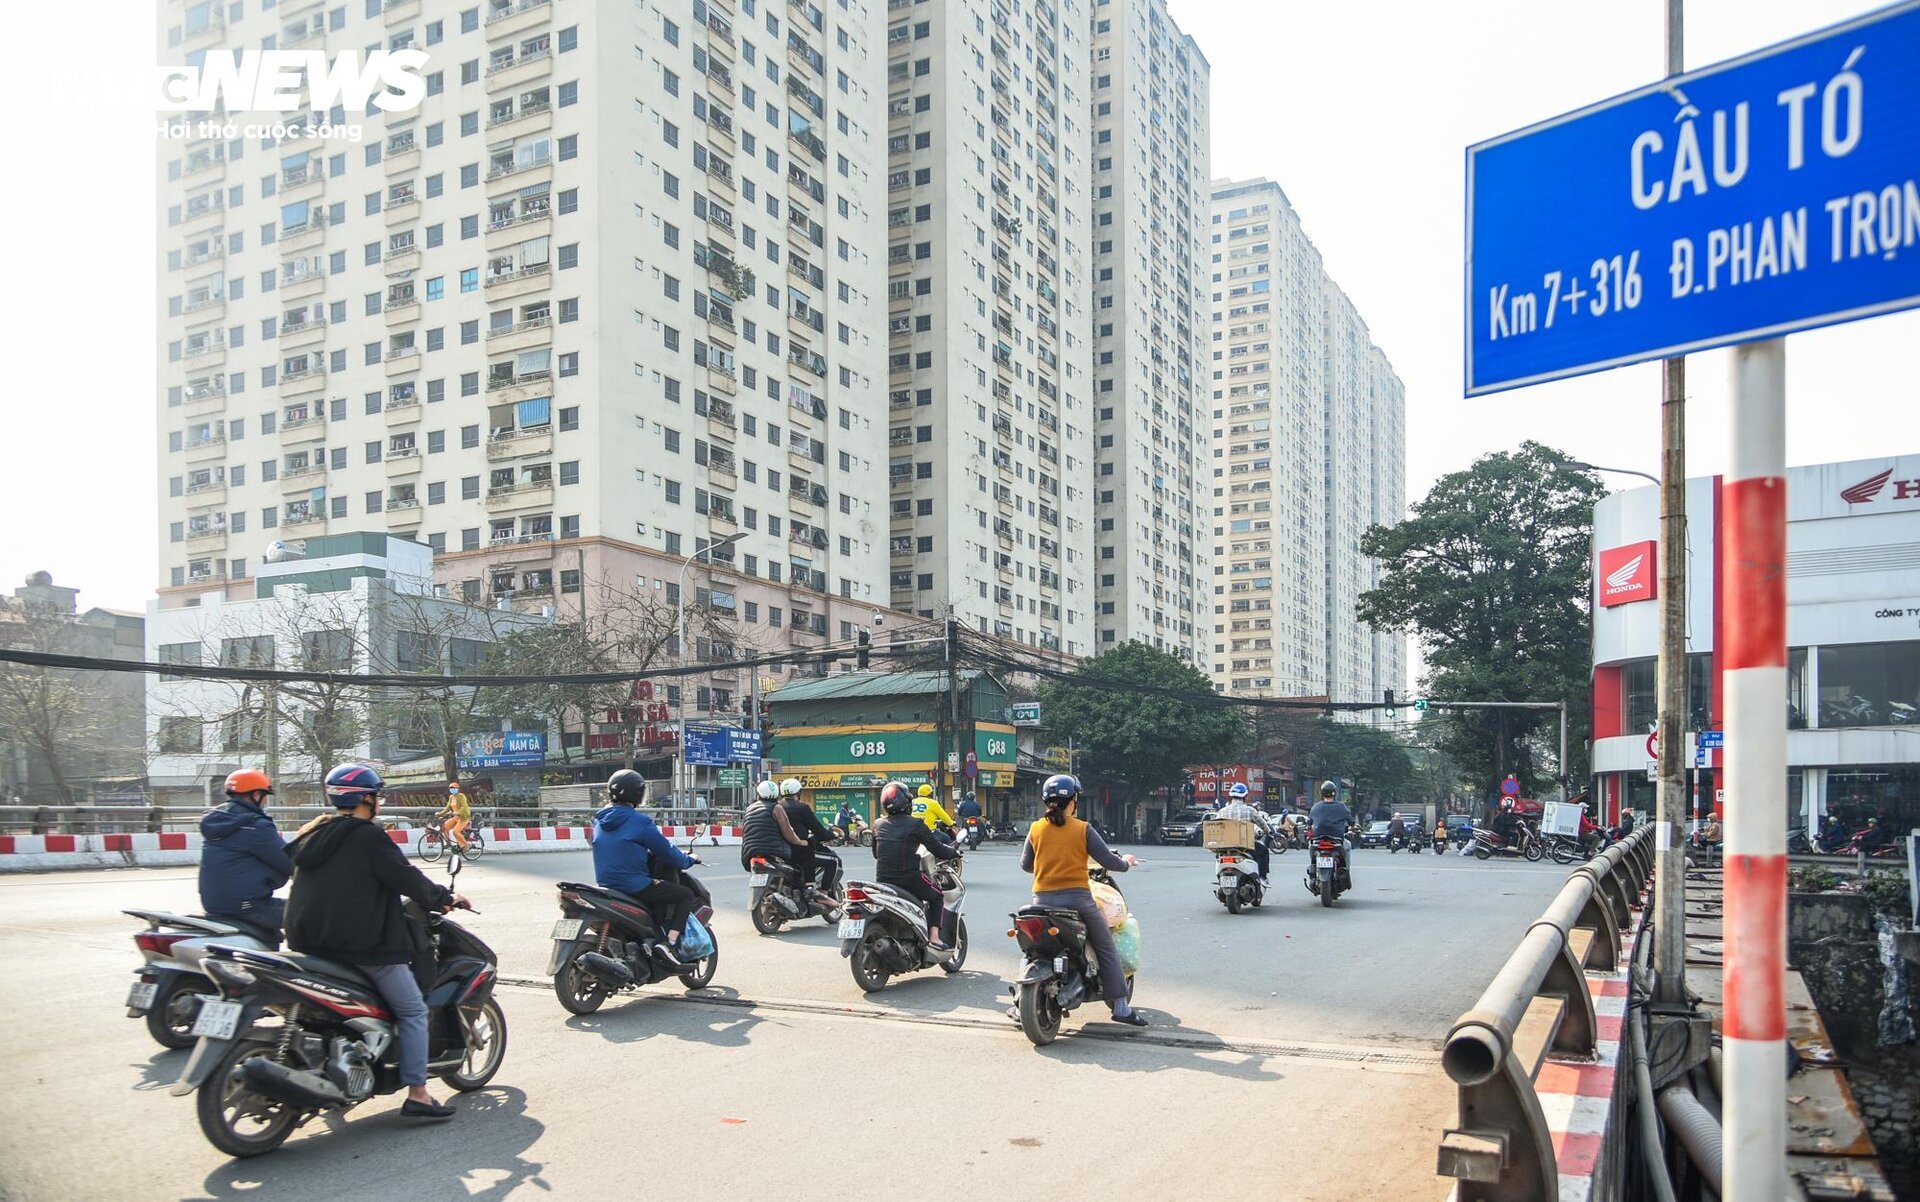 Cận cảnh tuyến đường ở Hà Nội sắp được đầu tư 2.800 tỷ đồng để mở rộng- Ảnh 3.